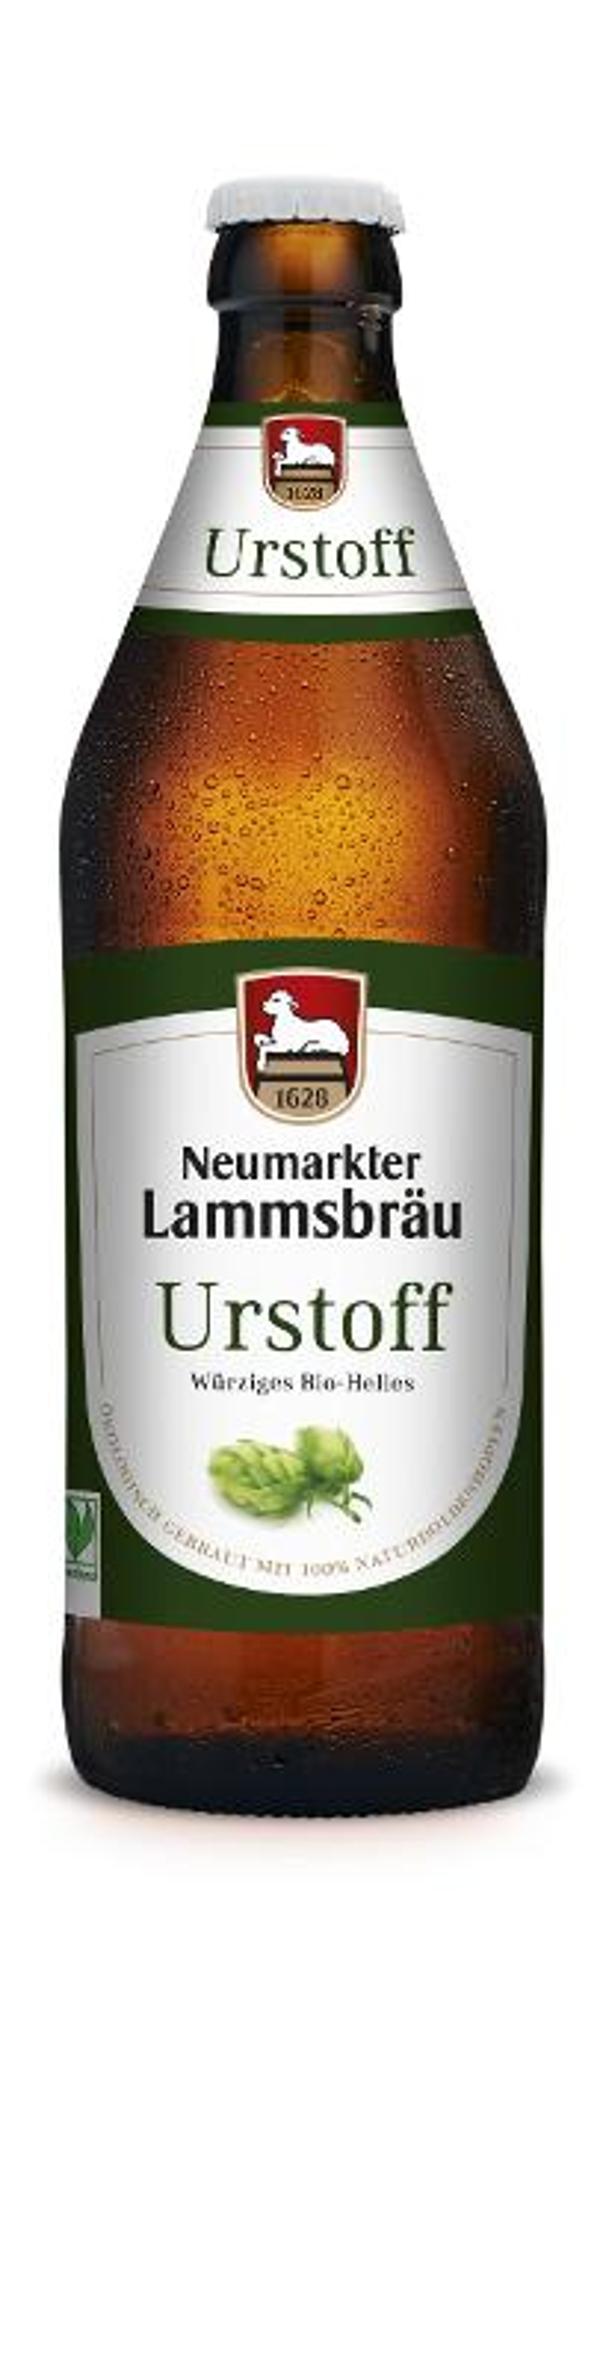 Produktfoto zu Lammsbräu - Urstoff